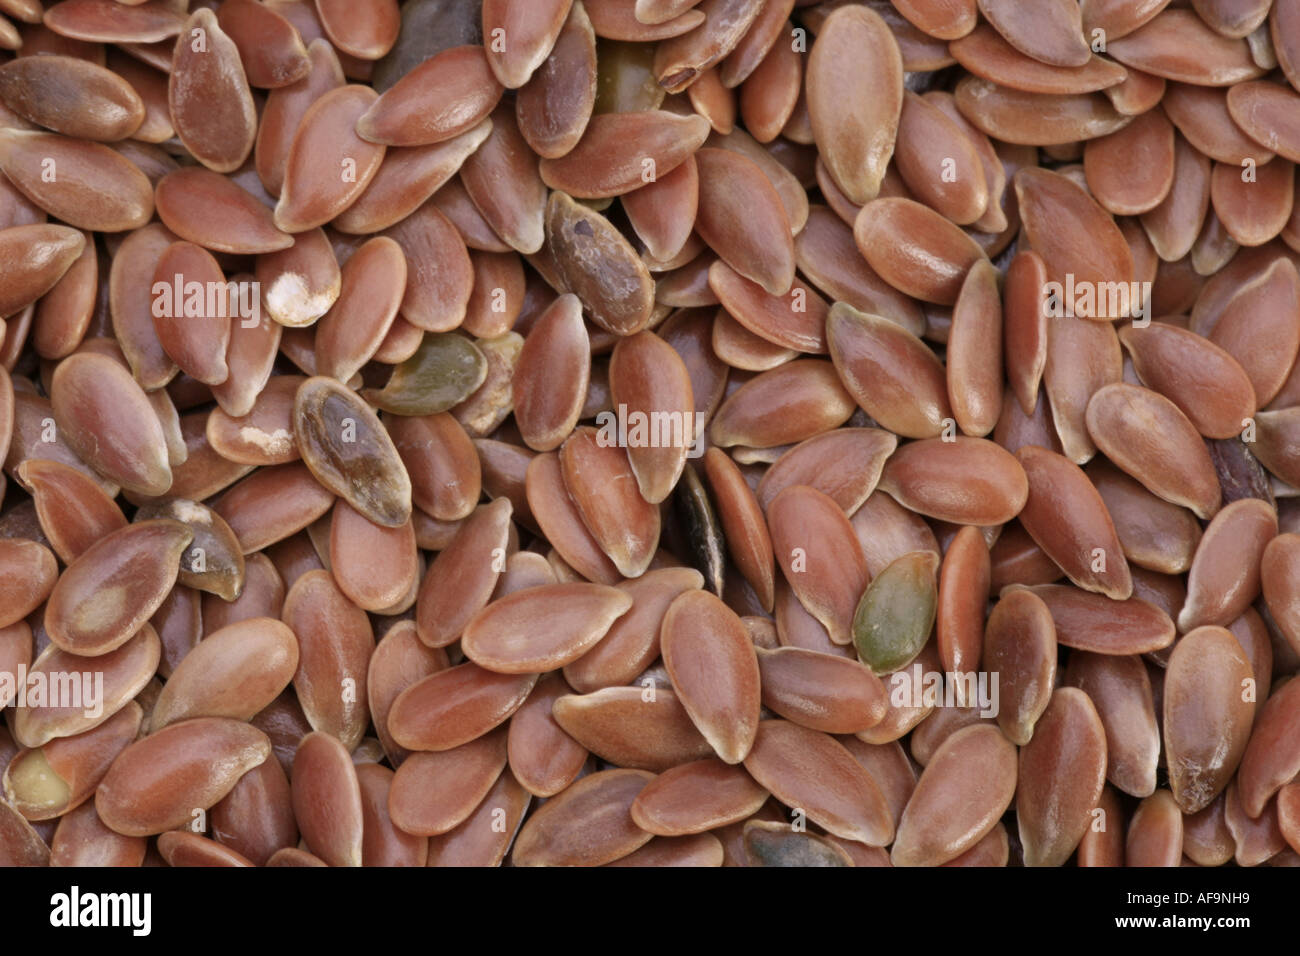 common flax (Linum usitatissimum), seeds Stock Photo